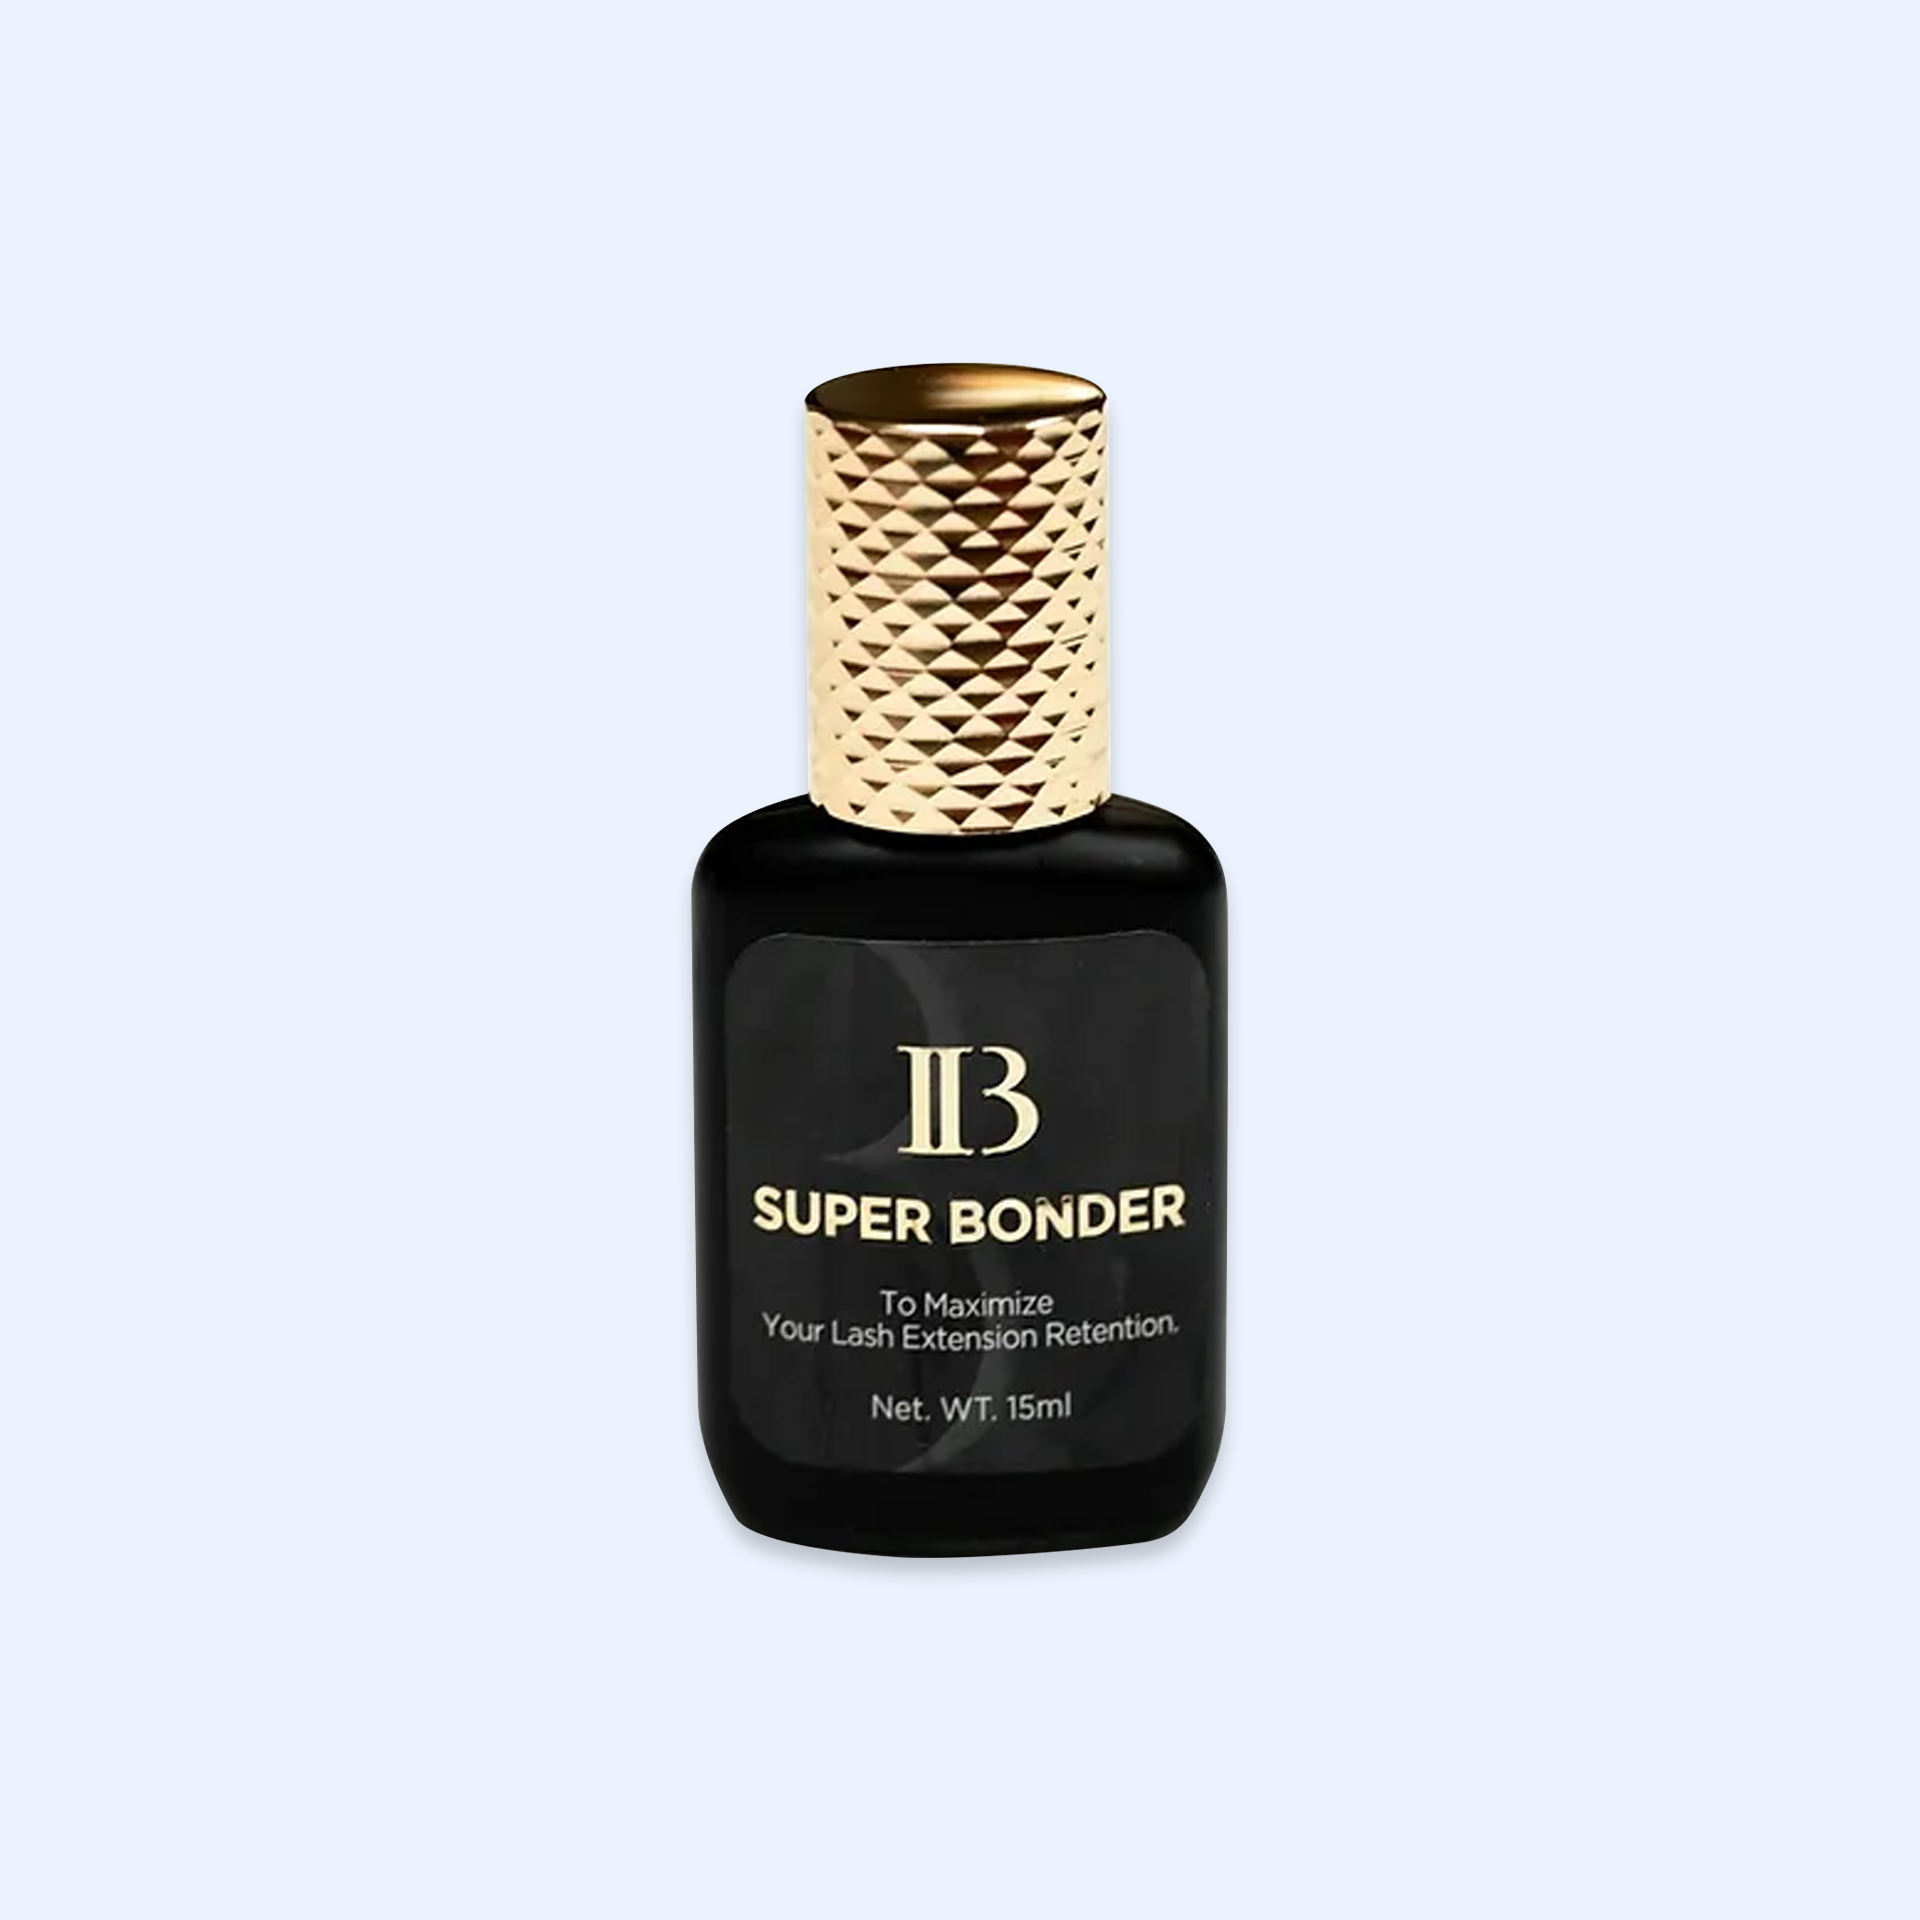 IB Super Bonder